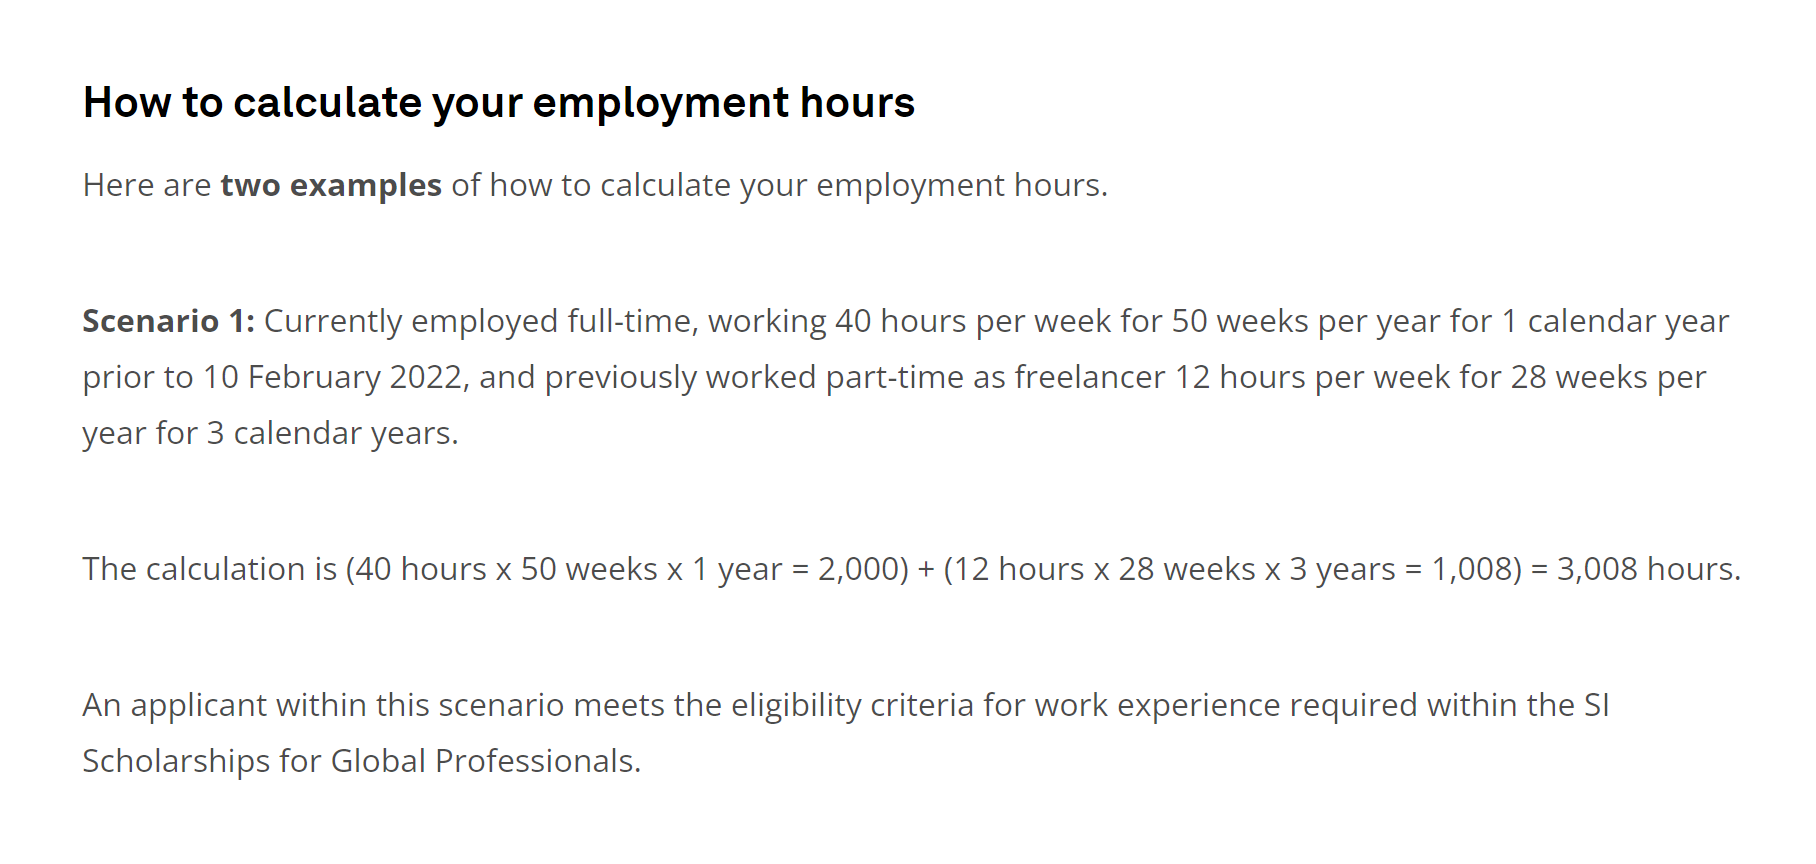 Пример того, как рассчитать количество отработанных часов. В этом случае студент работал полный день по 40 часов в неделю на протяжении 50 недель, а также 3 года подряд отрабатывал по 28 недель и по 12 часов в неделю на фрилансе. Его общий стаж — 3008 часов, он — подходящий кандидат